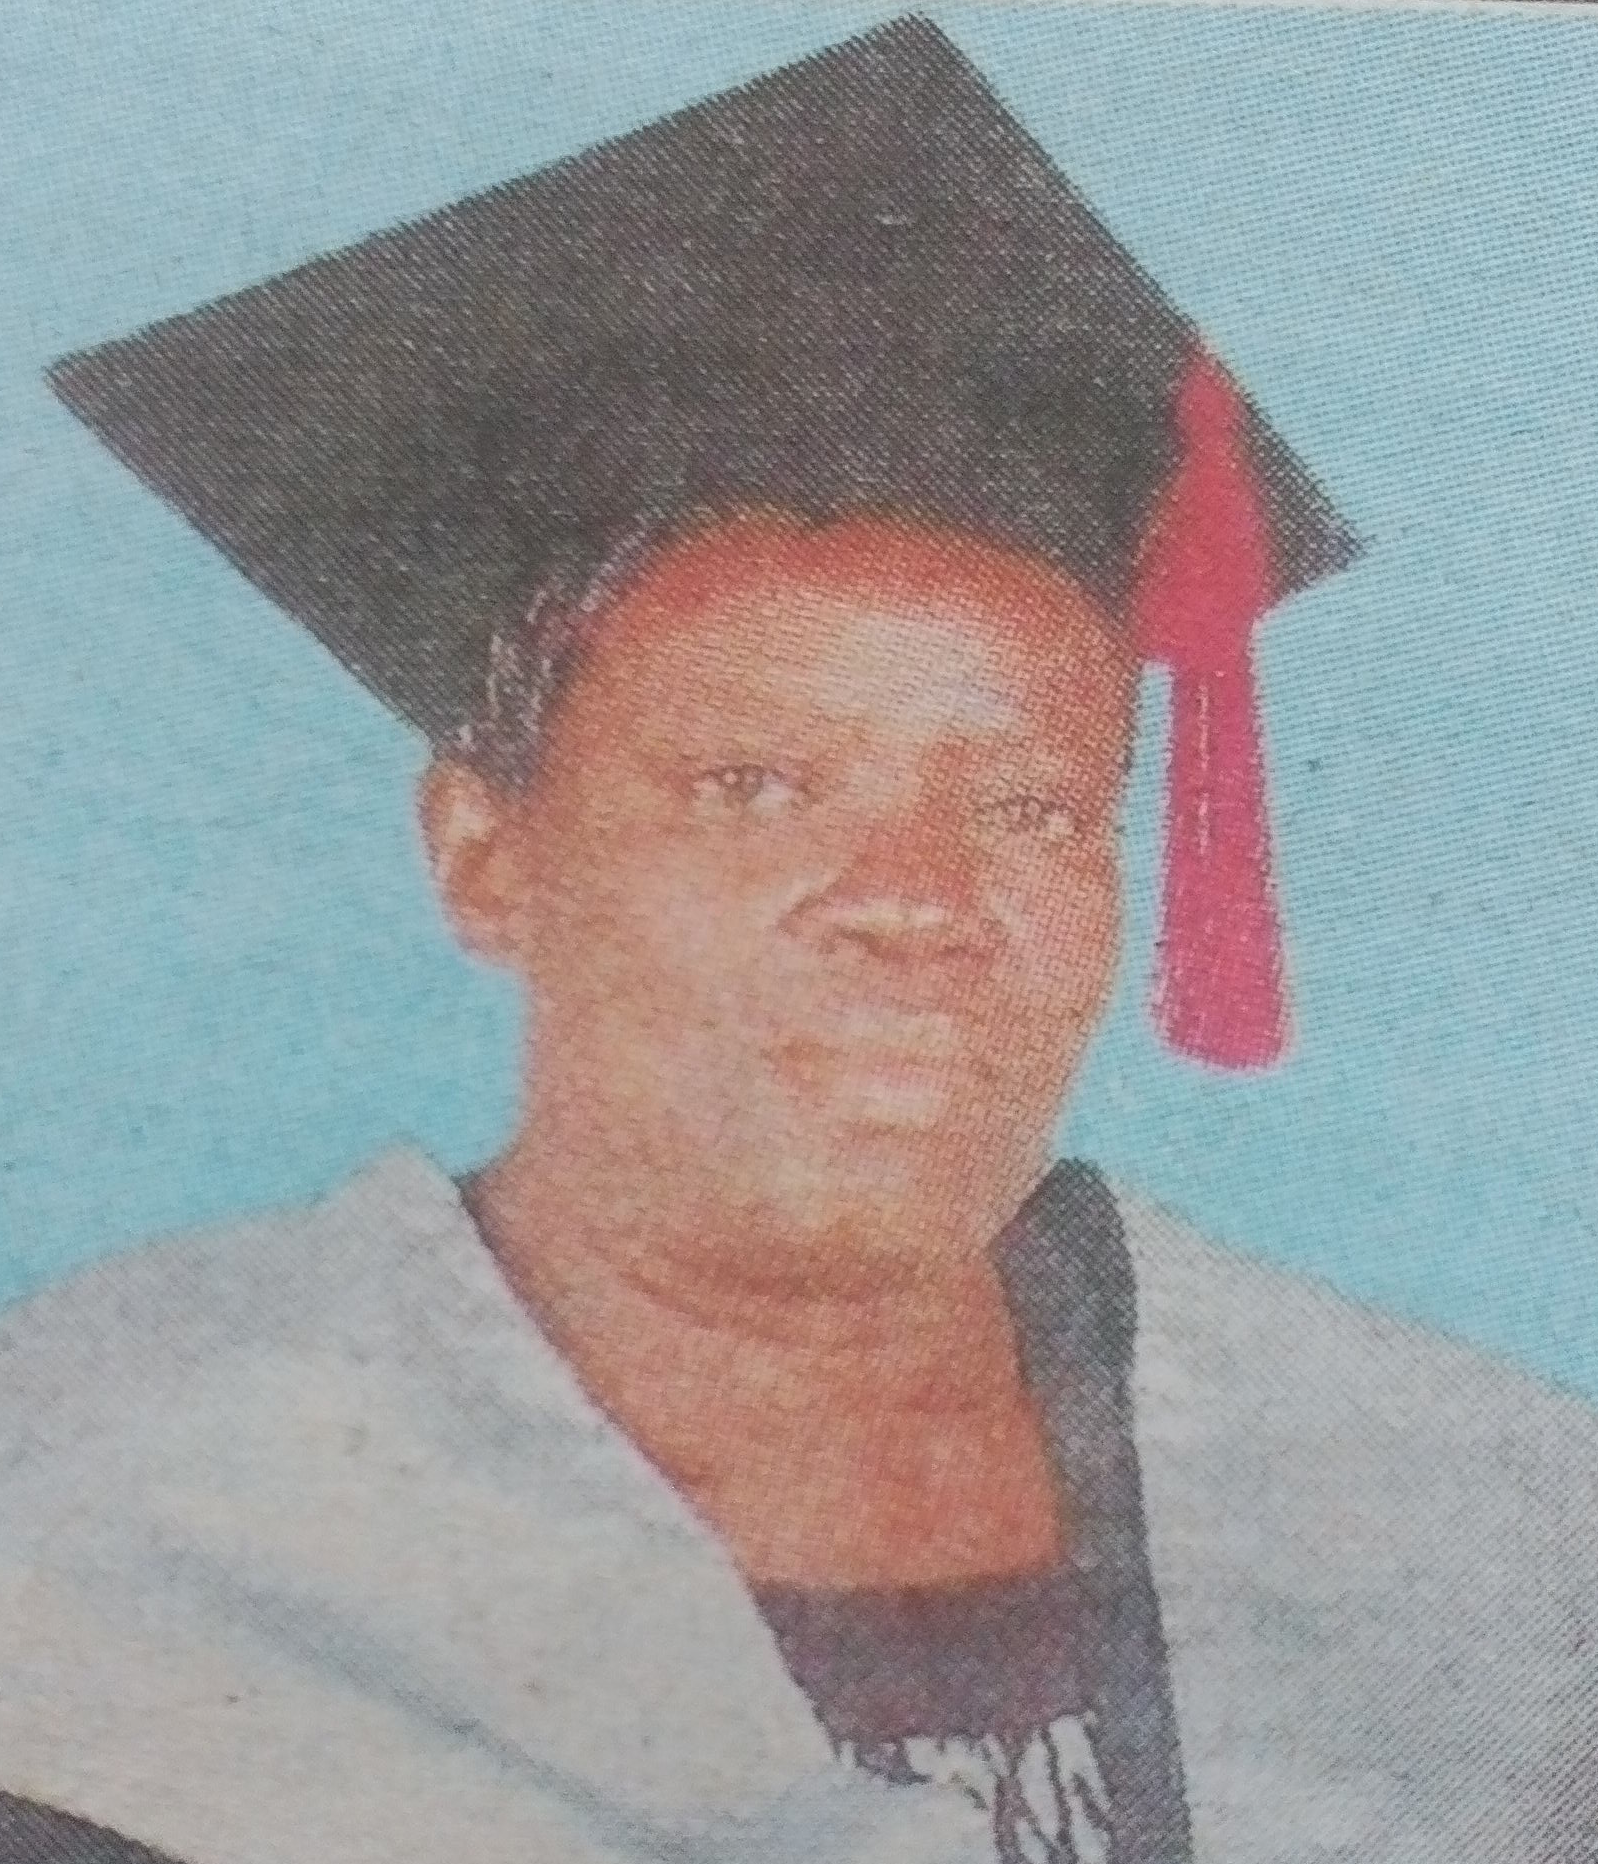 Obituary Image of Eunice Akoth Ouma Obonyo